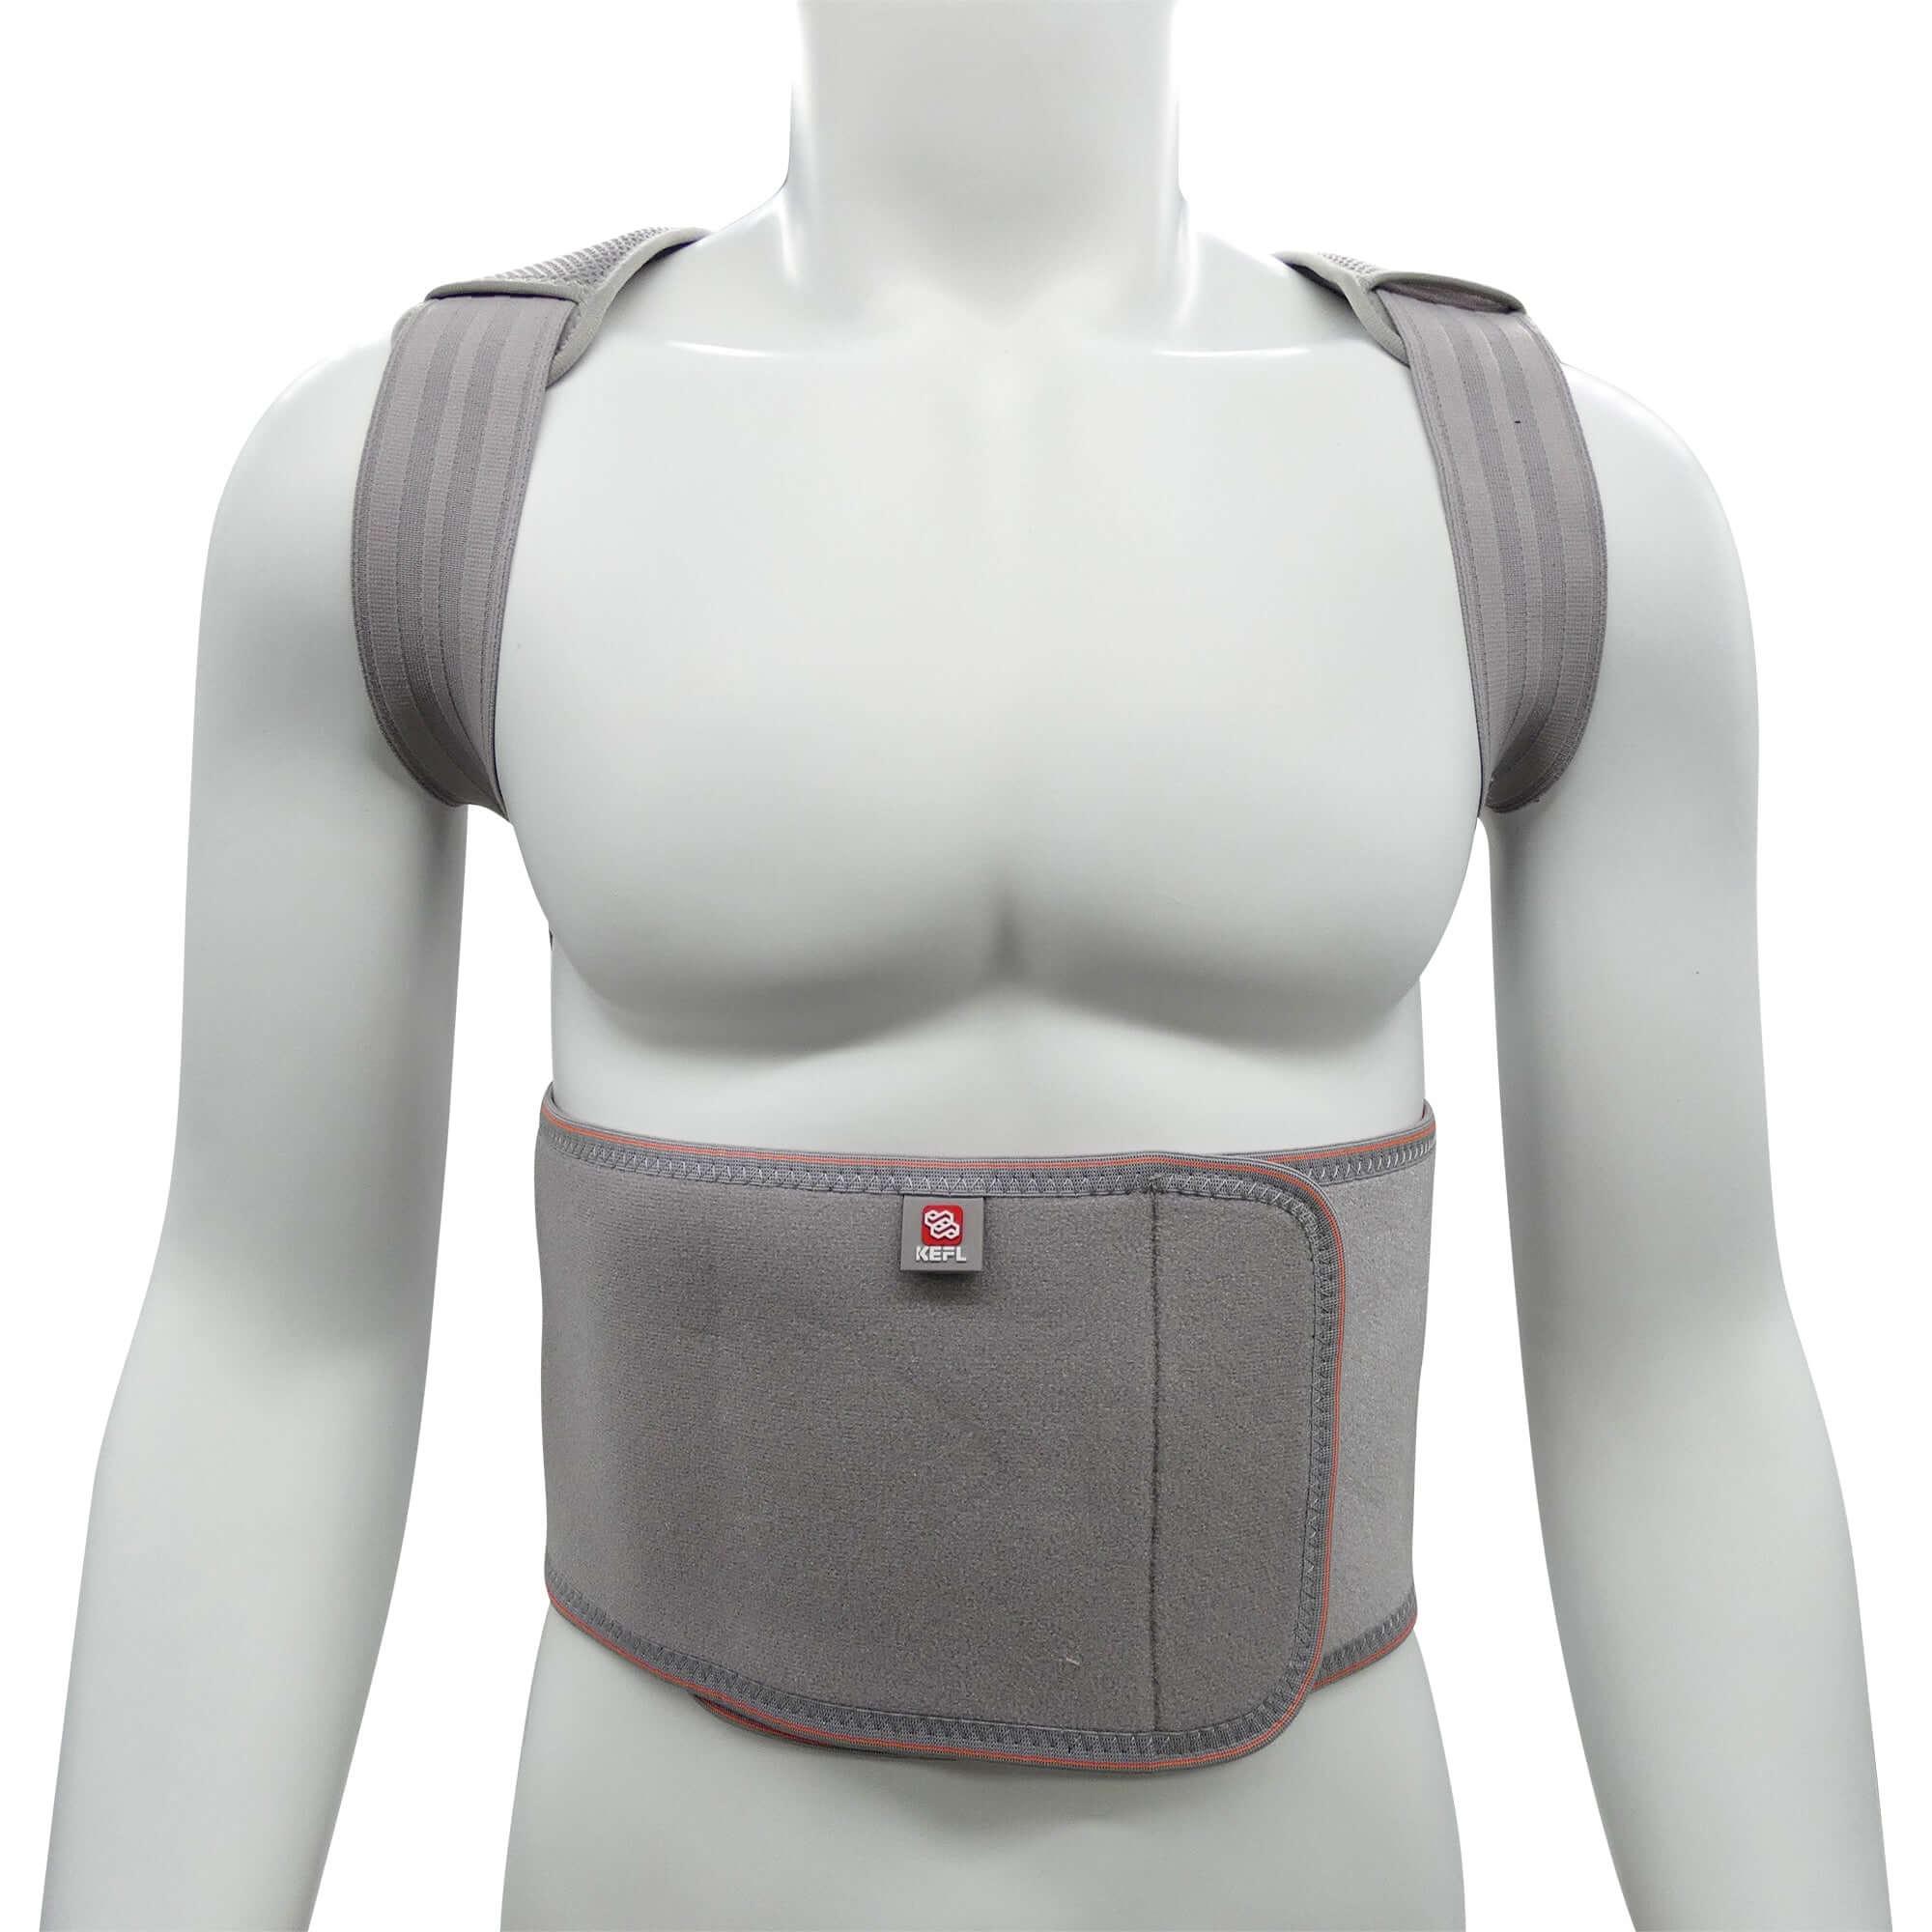 Adjustable Posture Corrector Low Back Support Shoulder Brace Belt